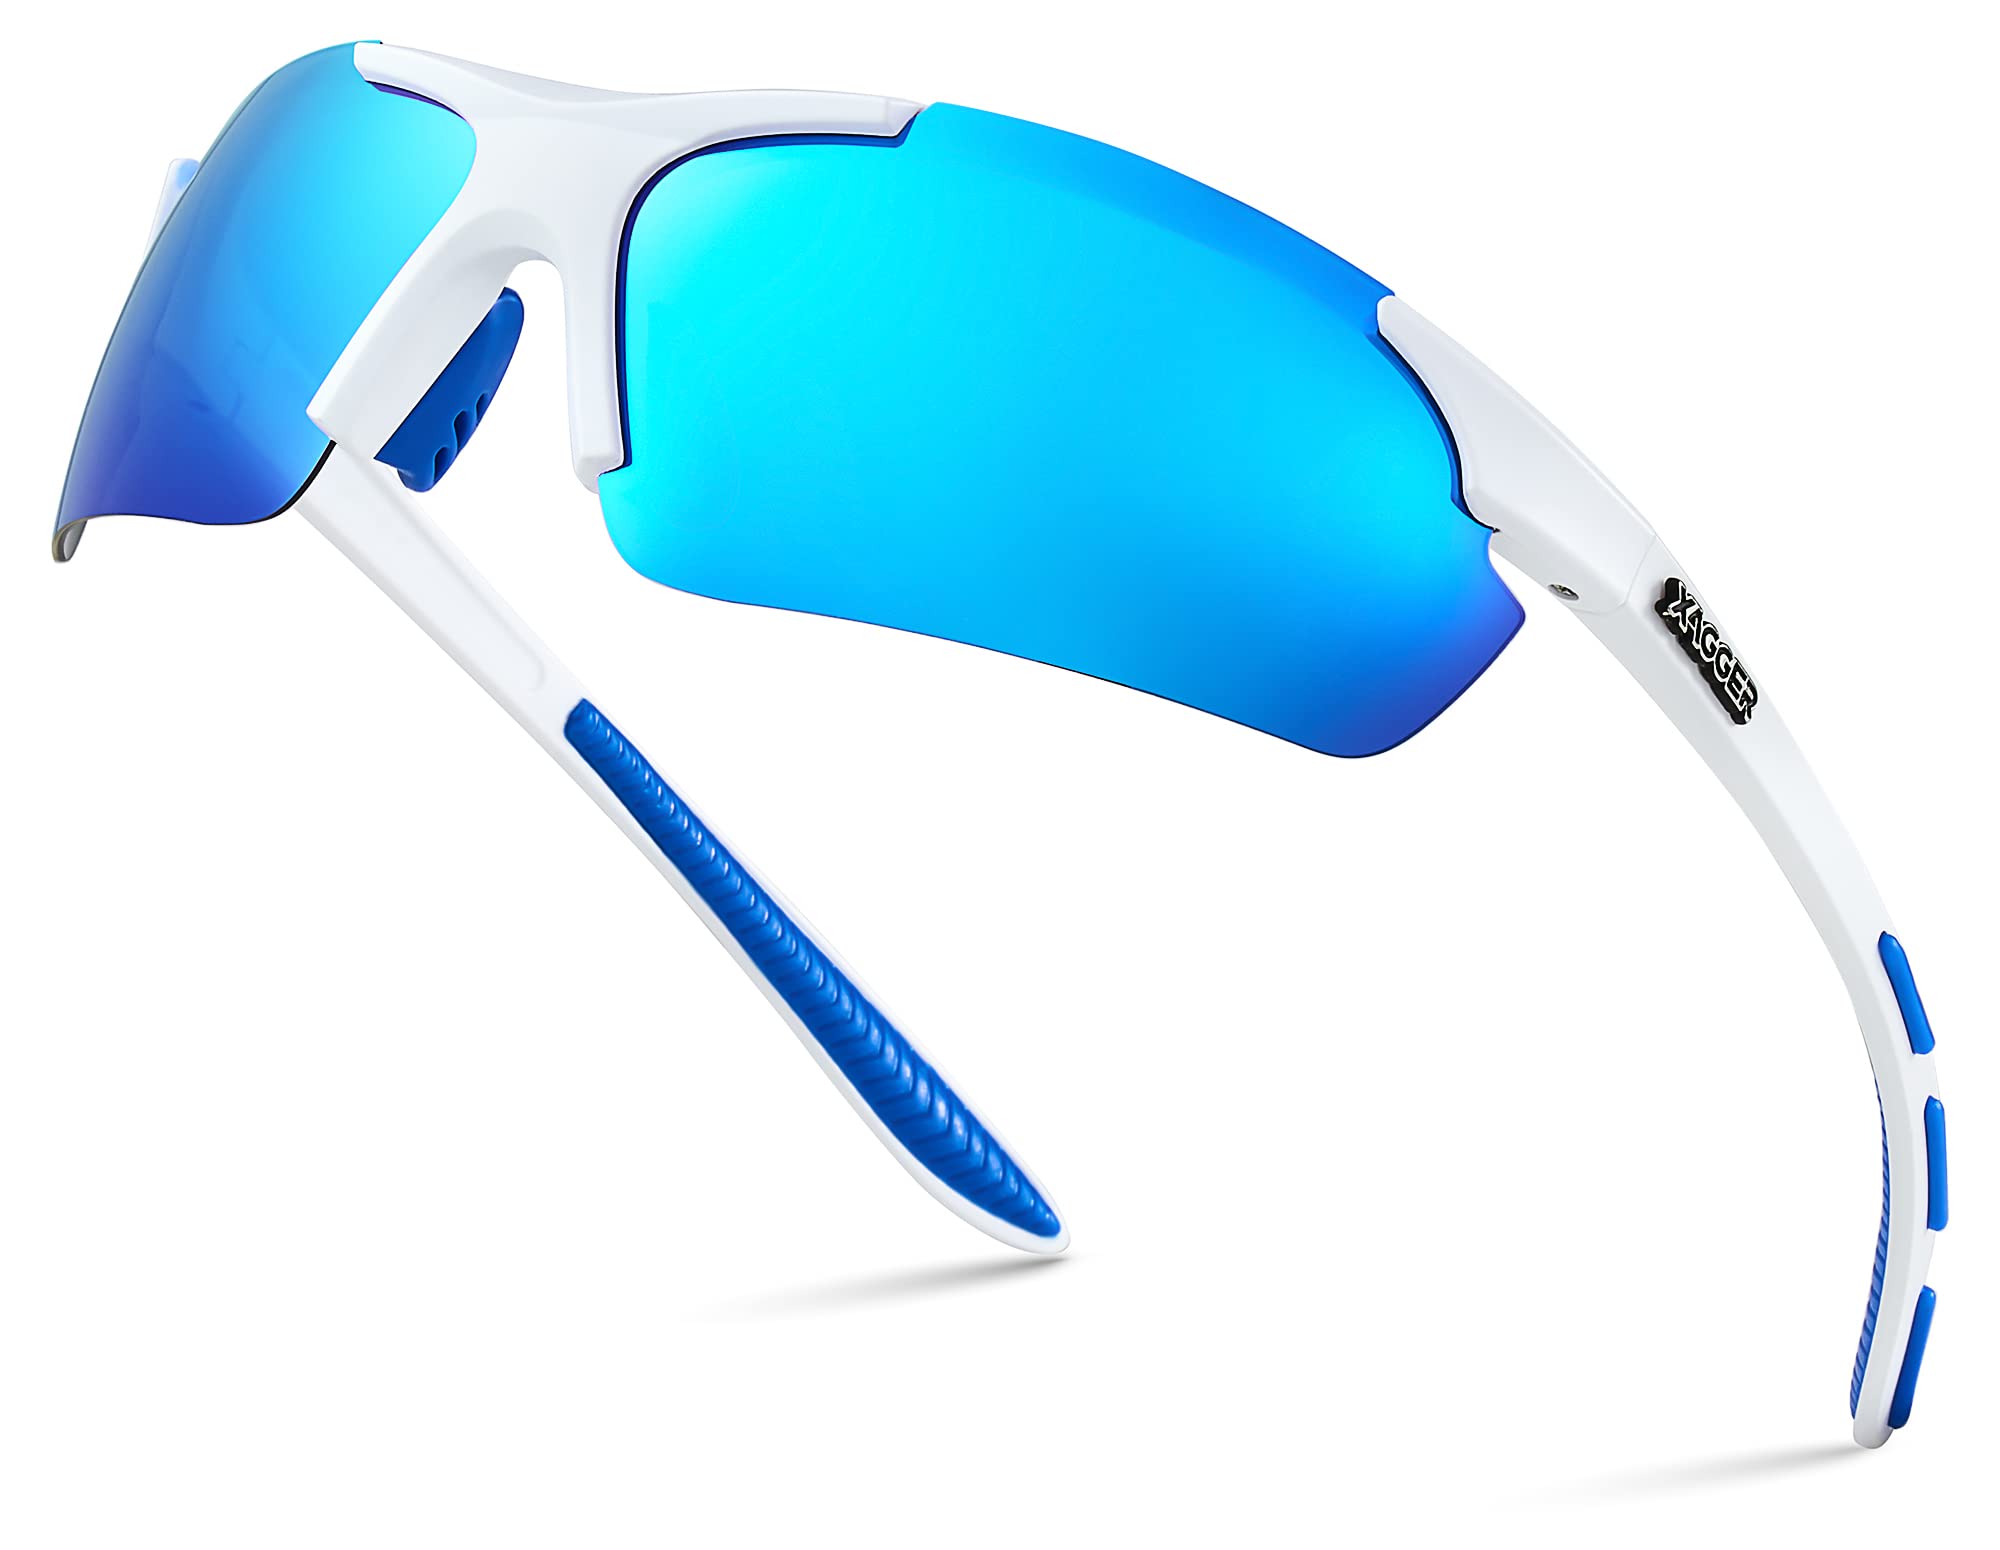 Xagger Polarized Wrap Around Sport Sunglasses for Men Women UV400  Lightweight Sports Glasses Matte White